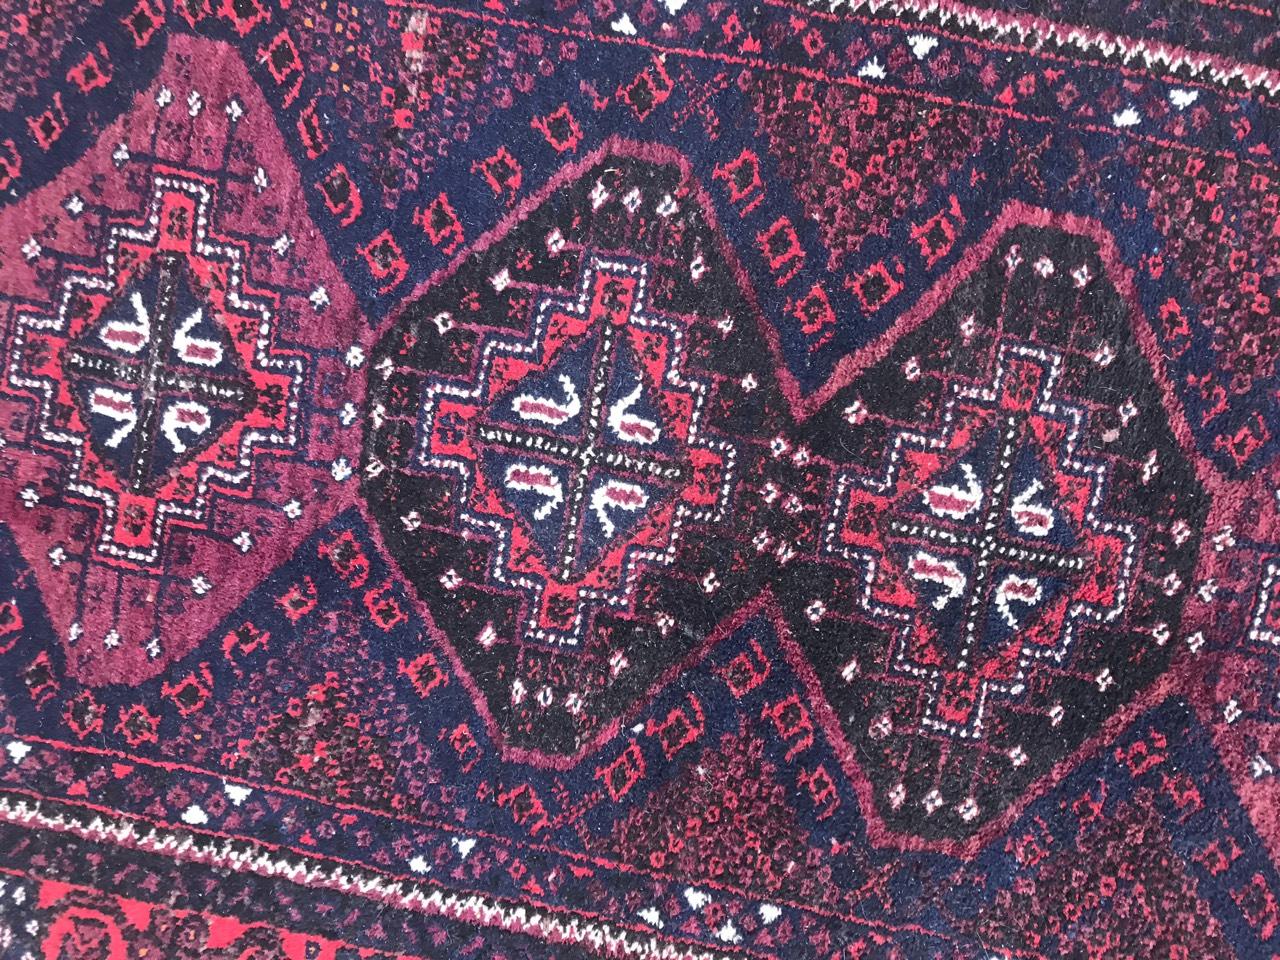 Magnifique tapis afghan turkmène baloutche, avec un design géométrique et des couleurs rouge et noir, entièrement noué à la main avec du velours de laine sur une base de laine.